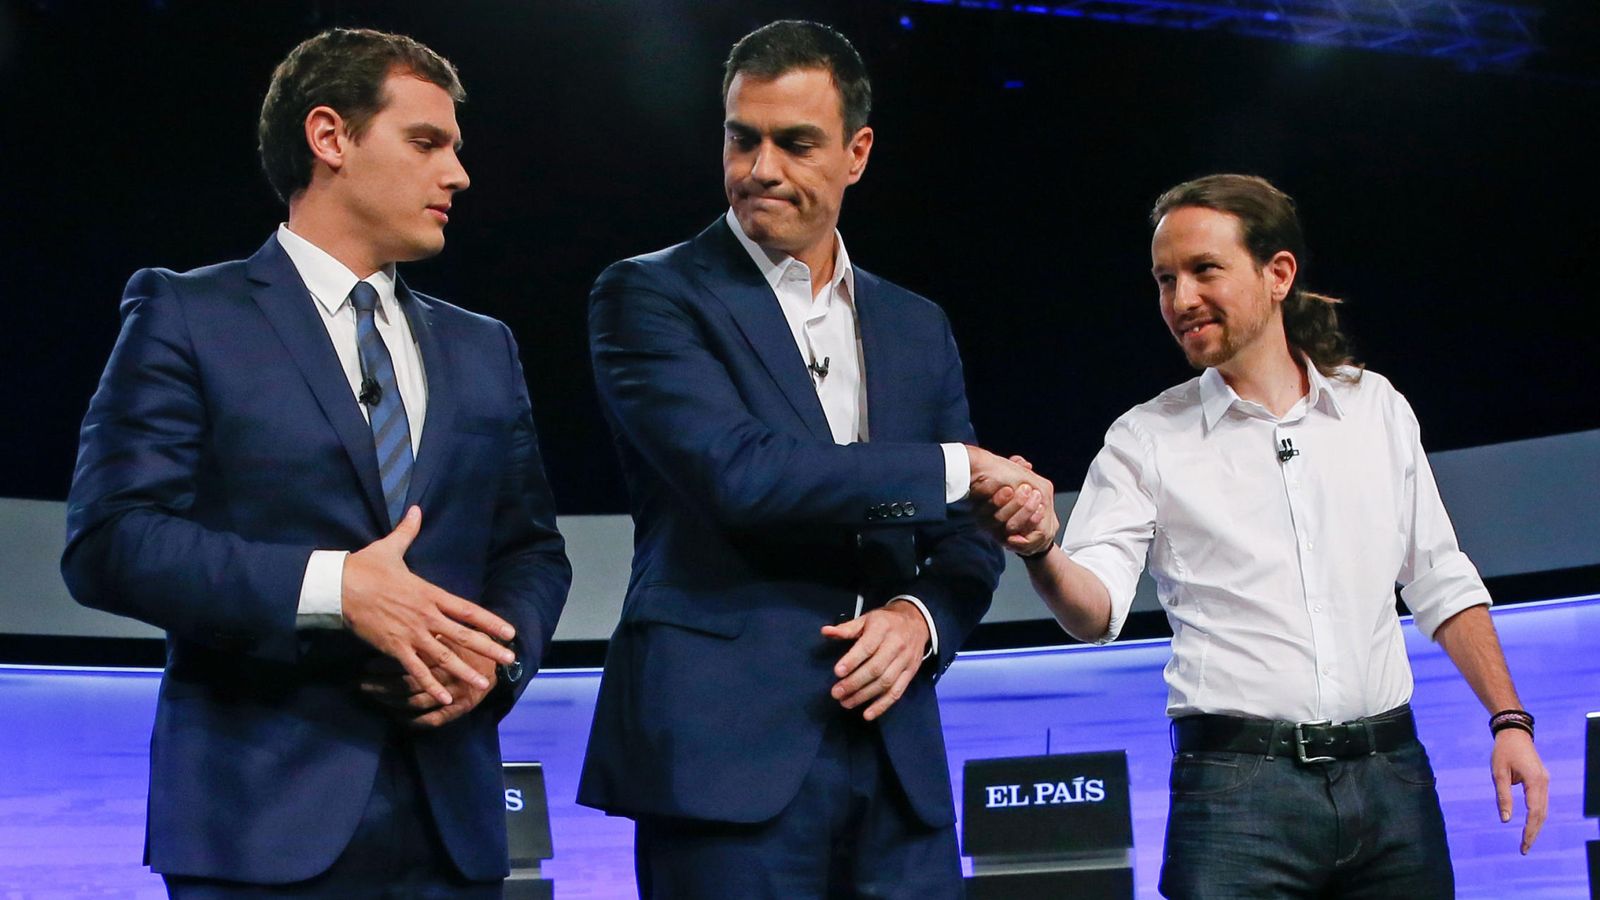 Foto: Los candidatos a la Presidencia del Gobierno: Albert Rivera (i); PSOE, Pedro Sánchez (c); y Podemos, Pablo Iglesias (d), se saludan en un debate televisivo. (EFE)